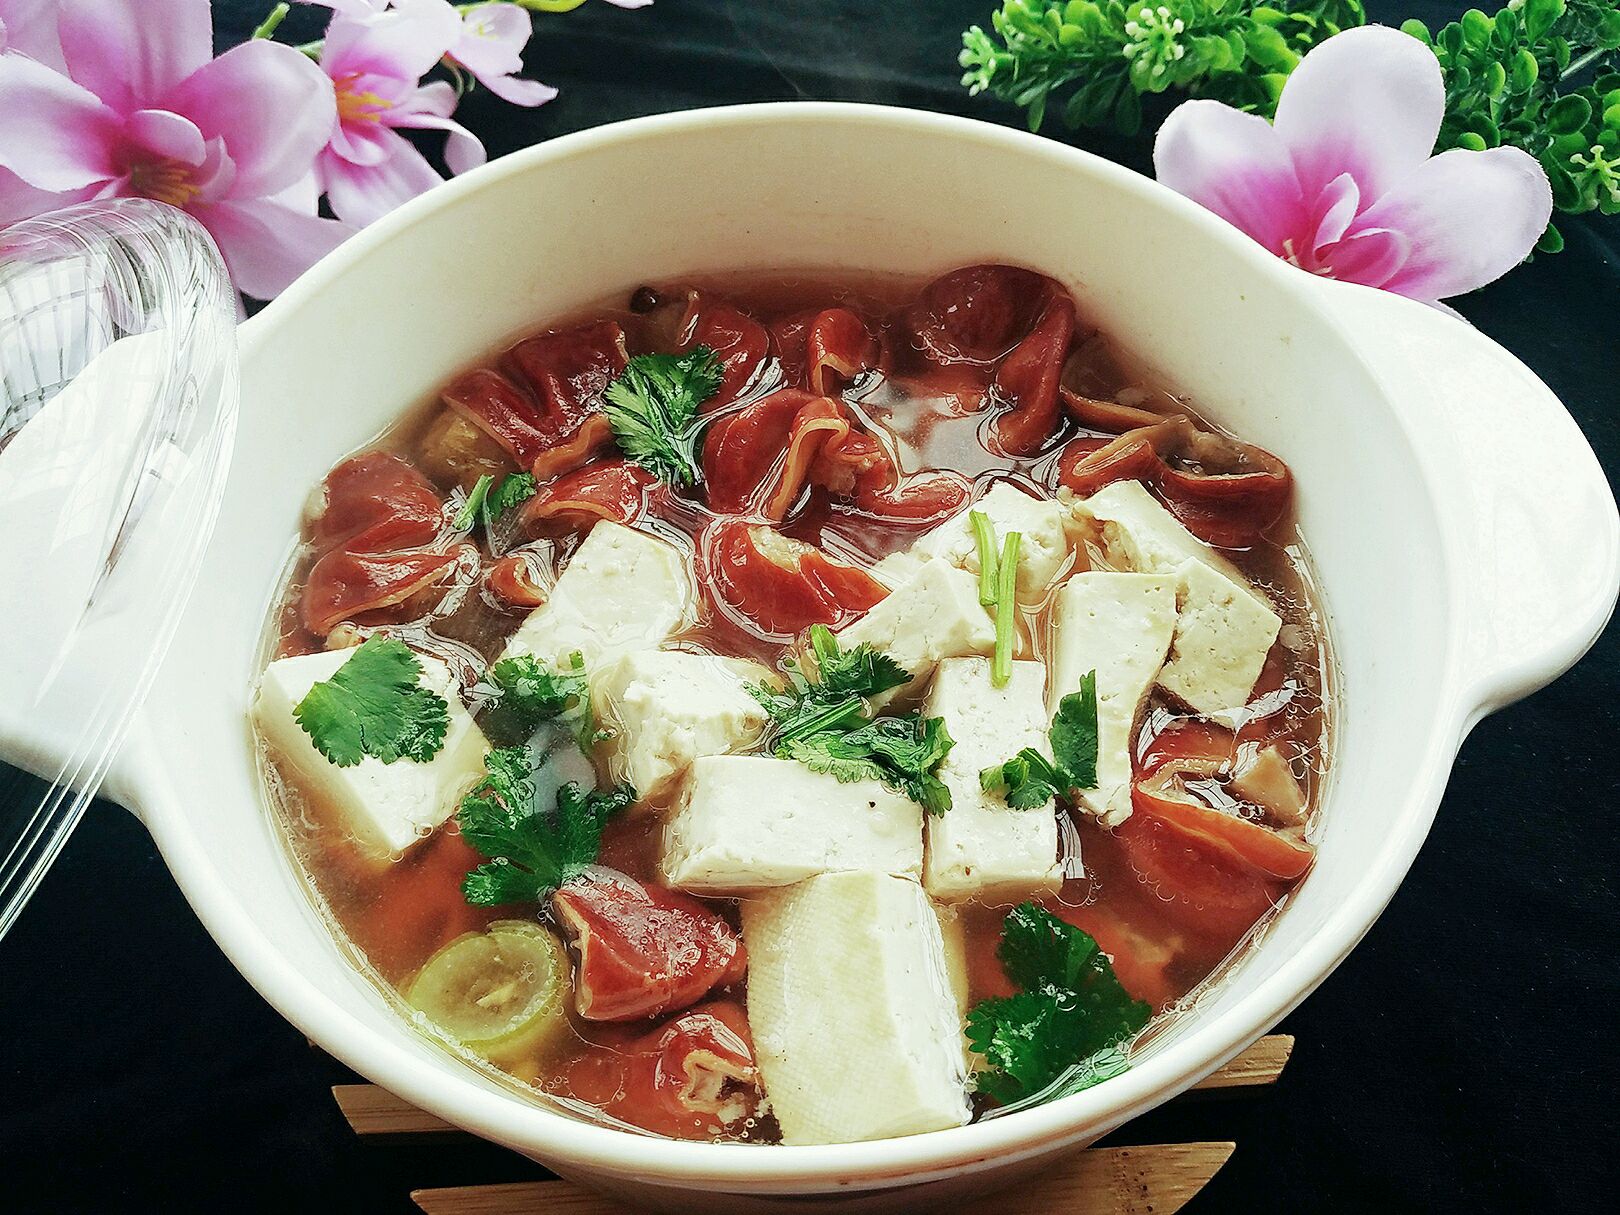 砂锅烩菜怎么做_砂锅烩菜的做法_豆果美食